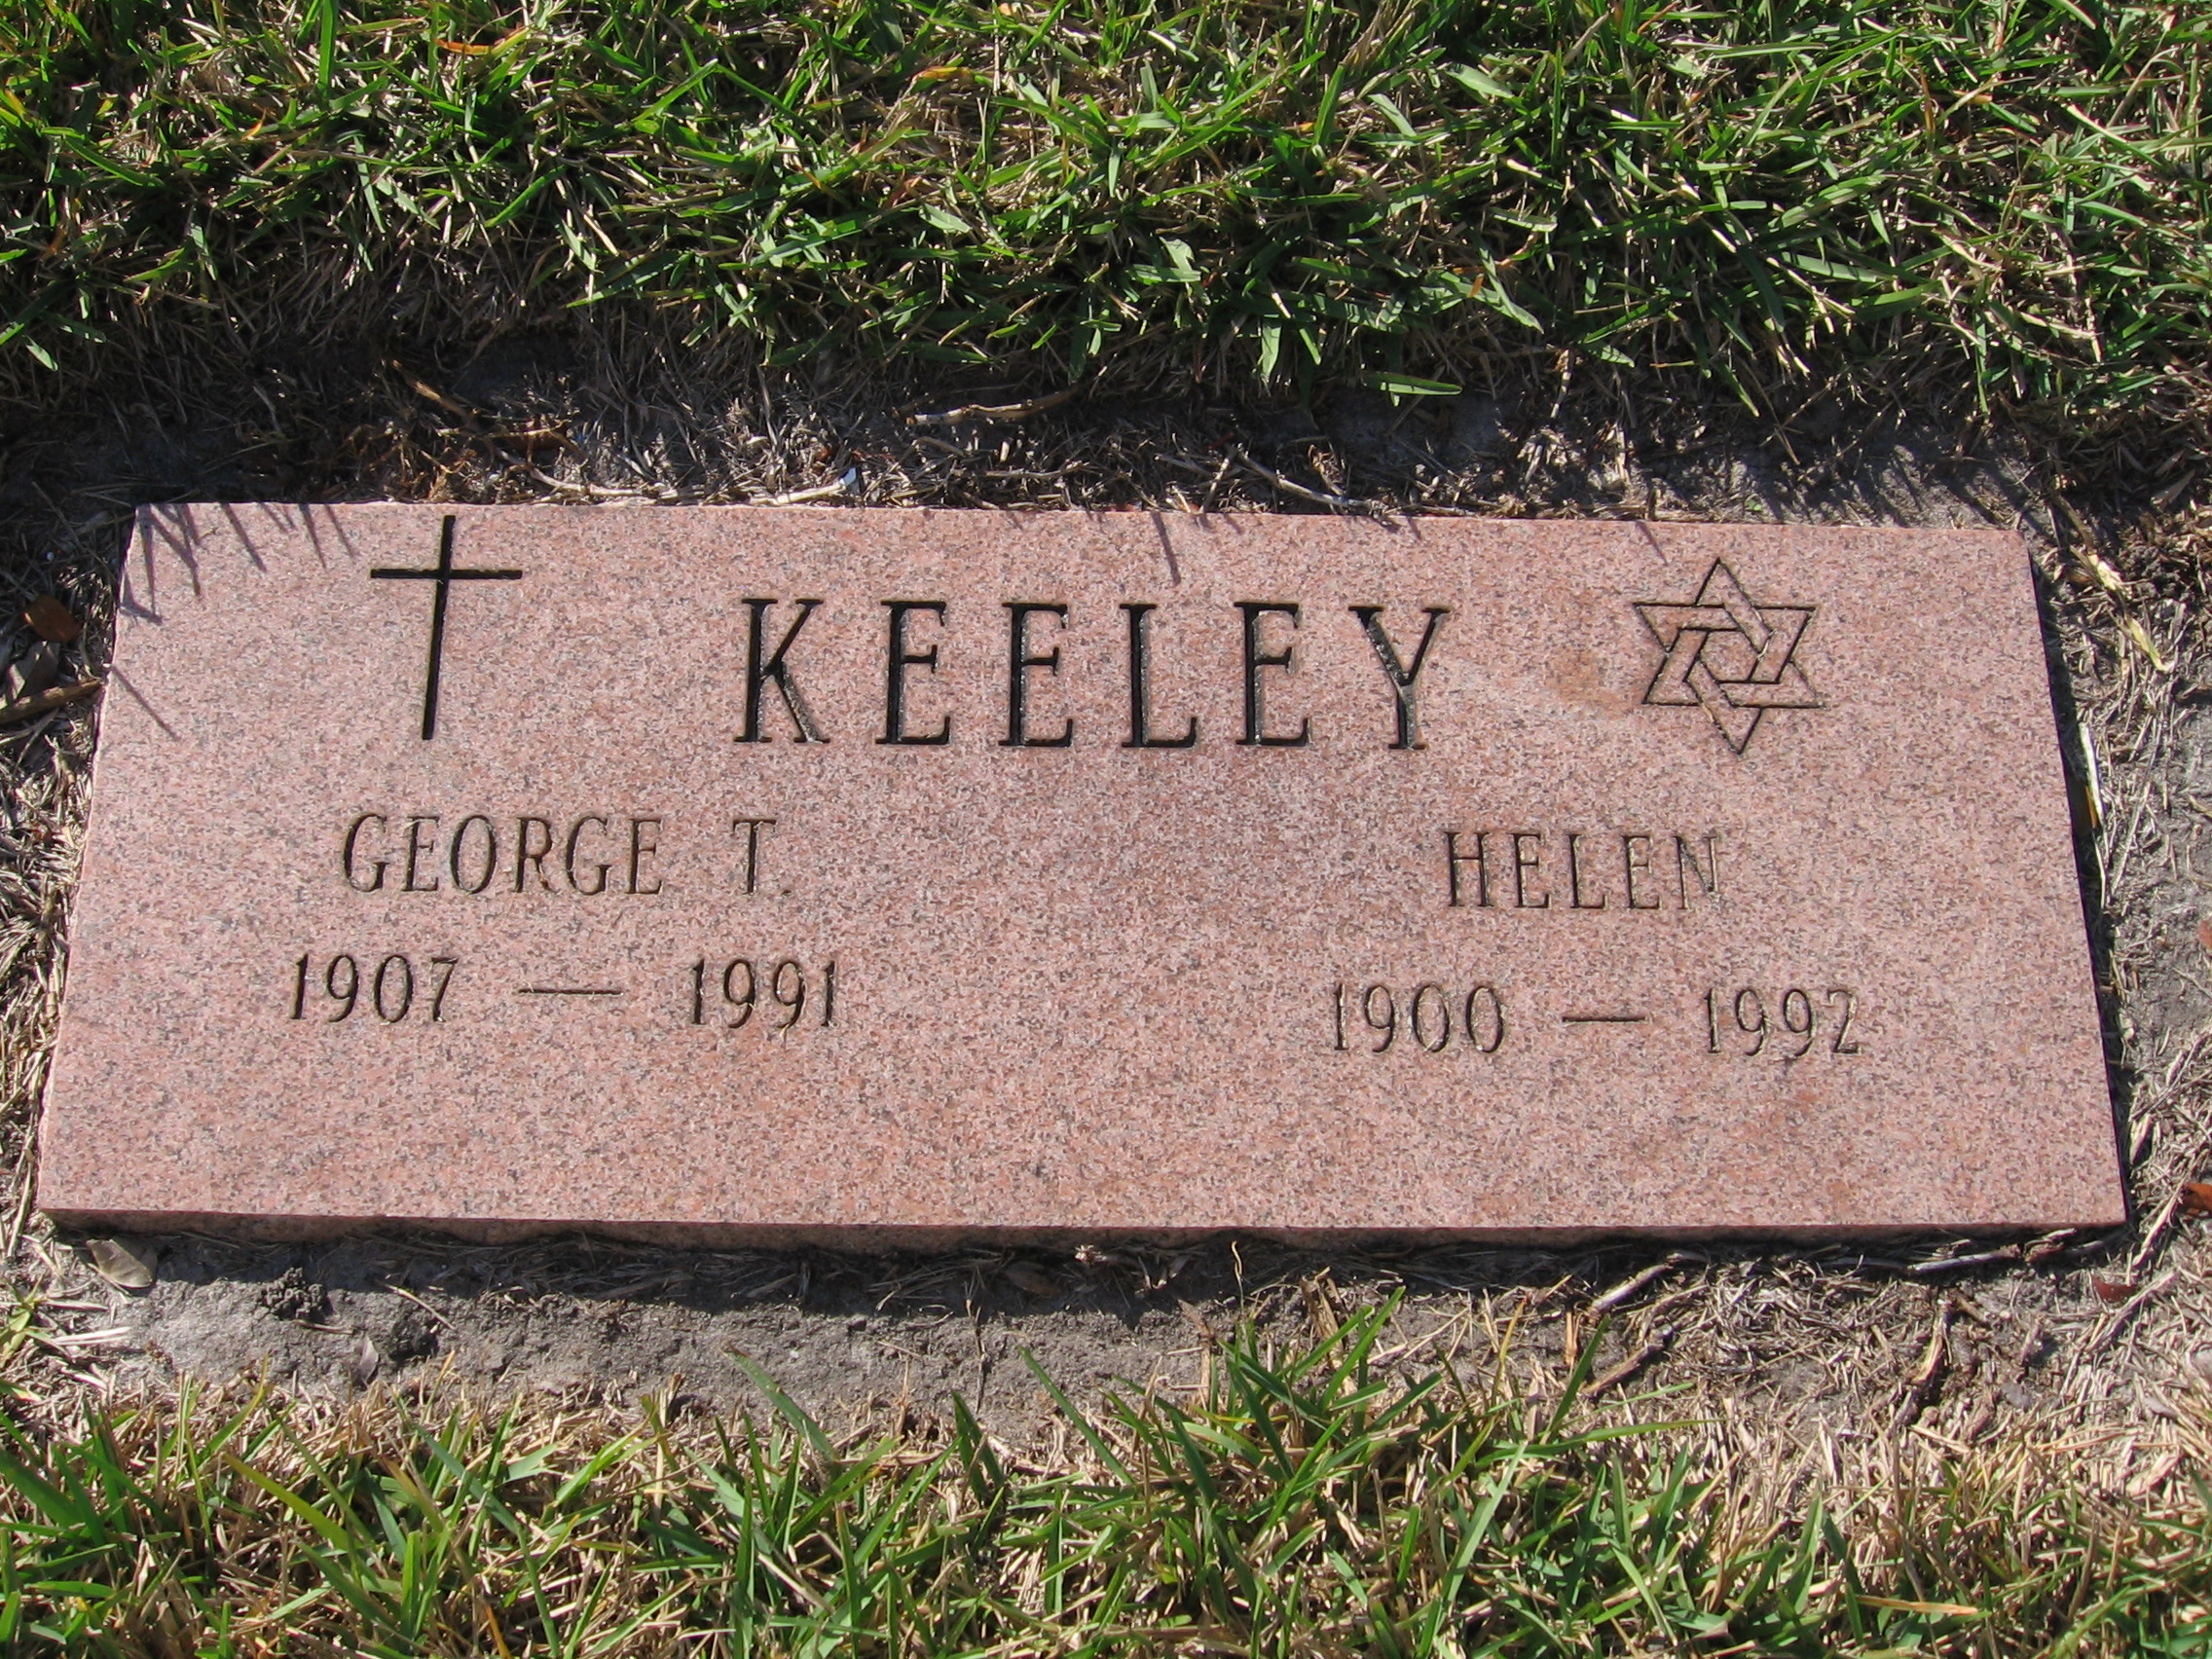 George T Keeley